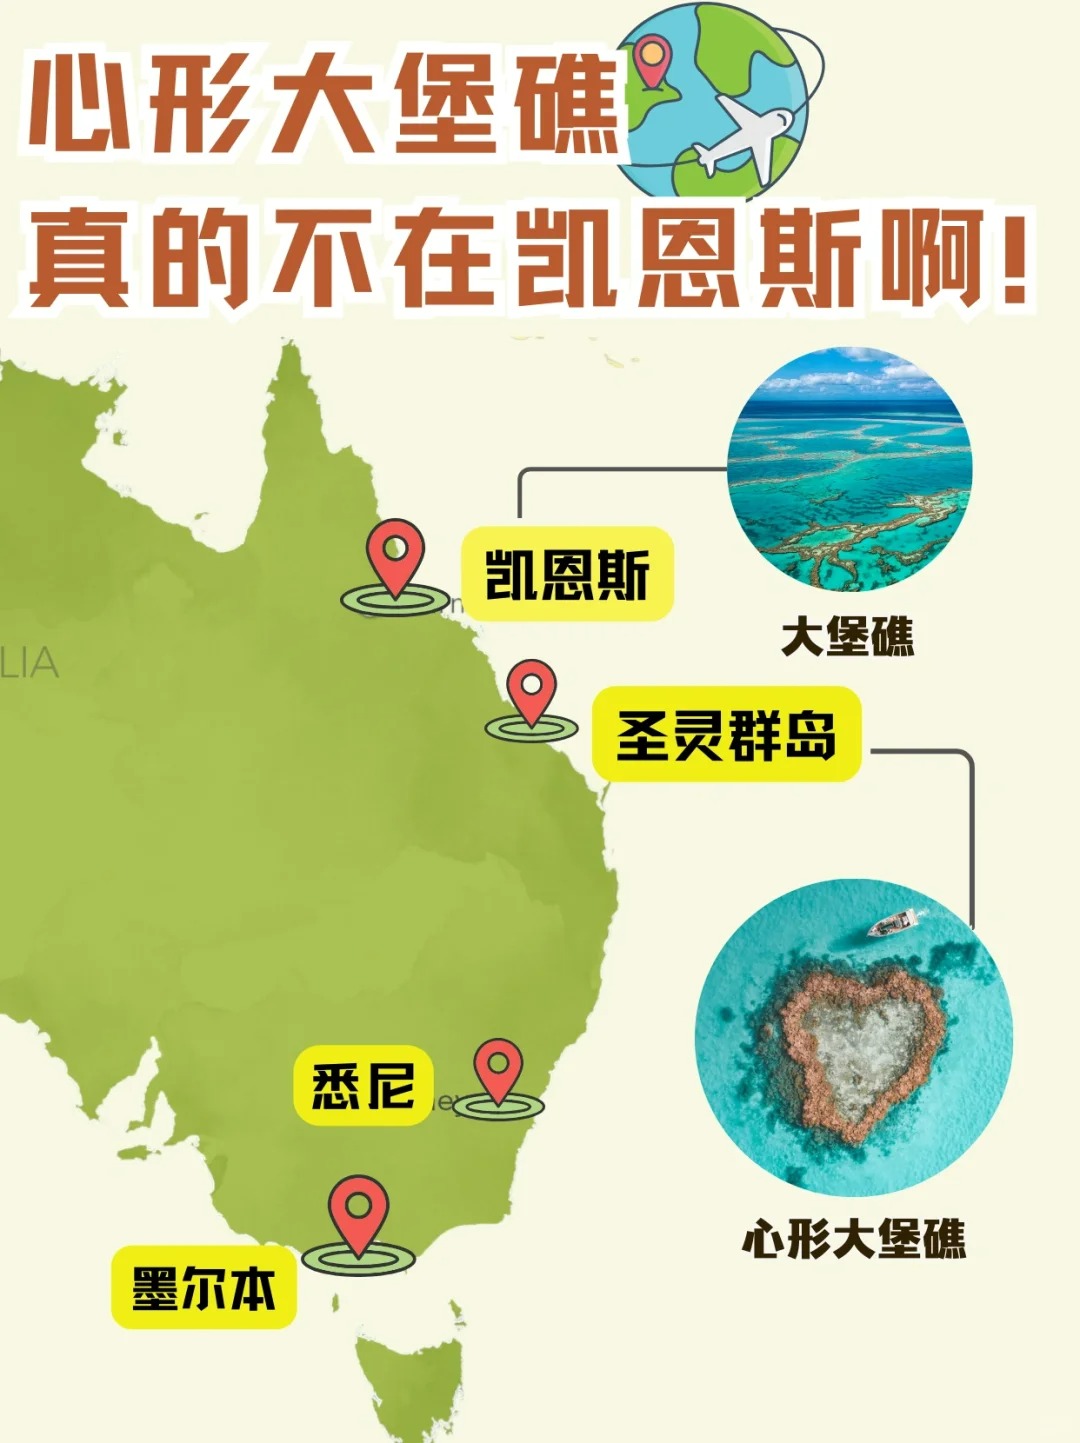 别再说去澳大利亚大堡礁看心形岛啦